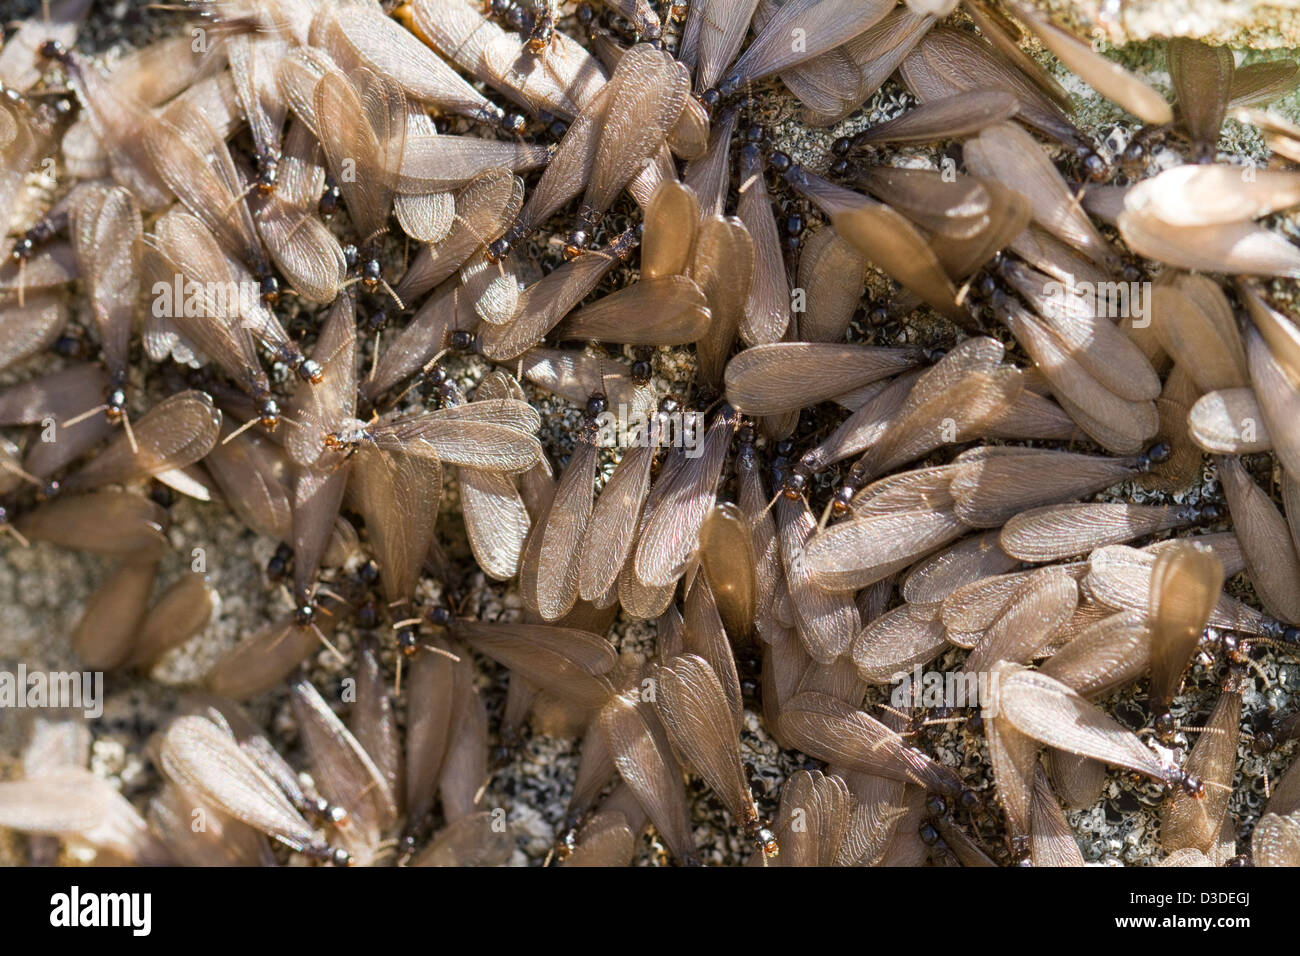 Cerrar ver detalle de un enjambre de termitas aladas en la naturaleza. Foto de stock